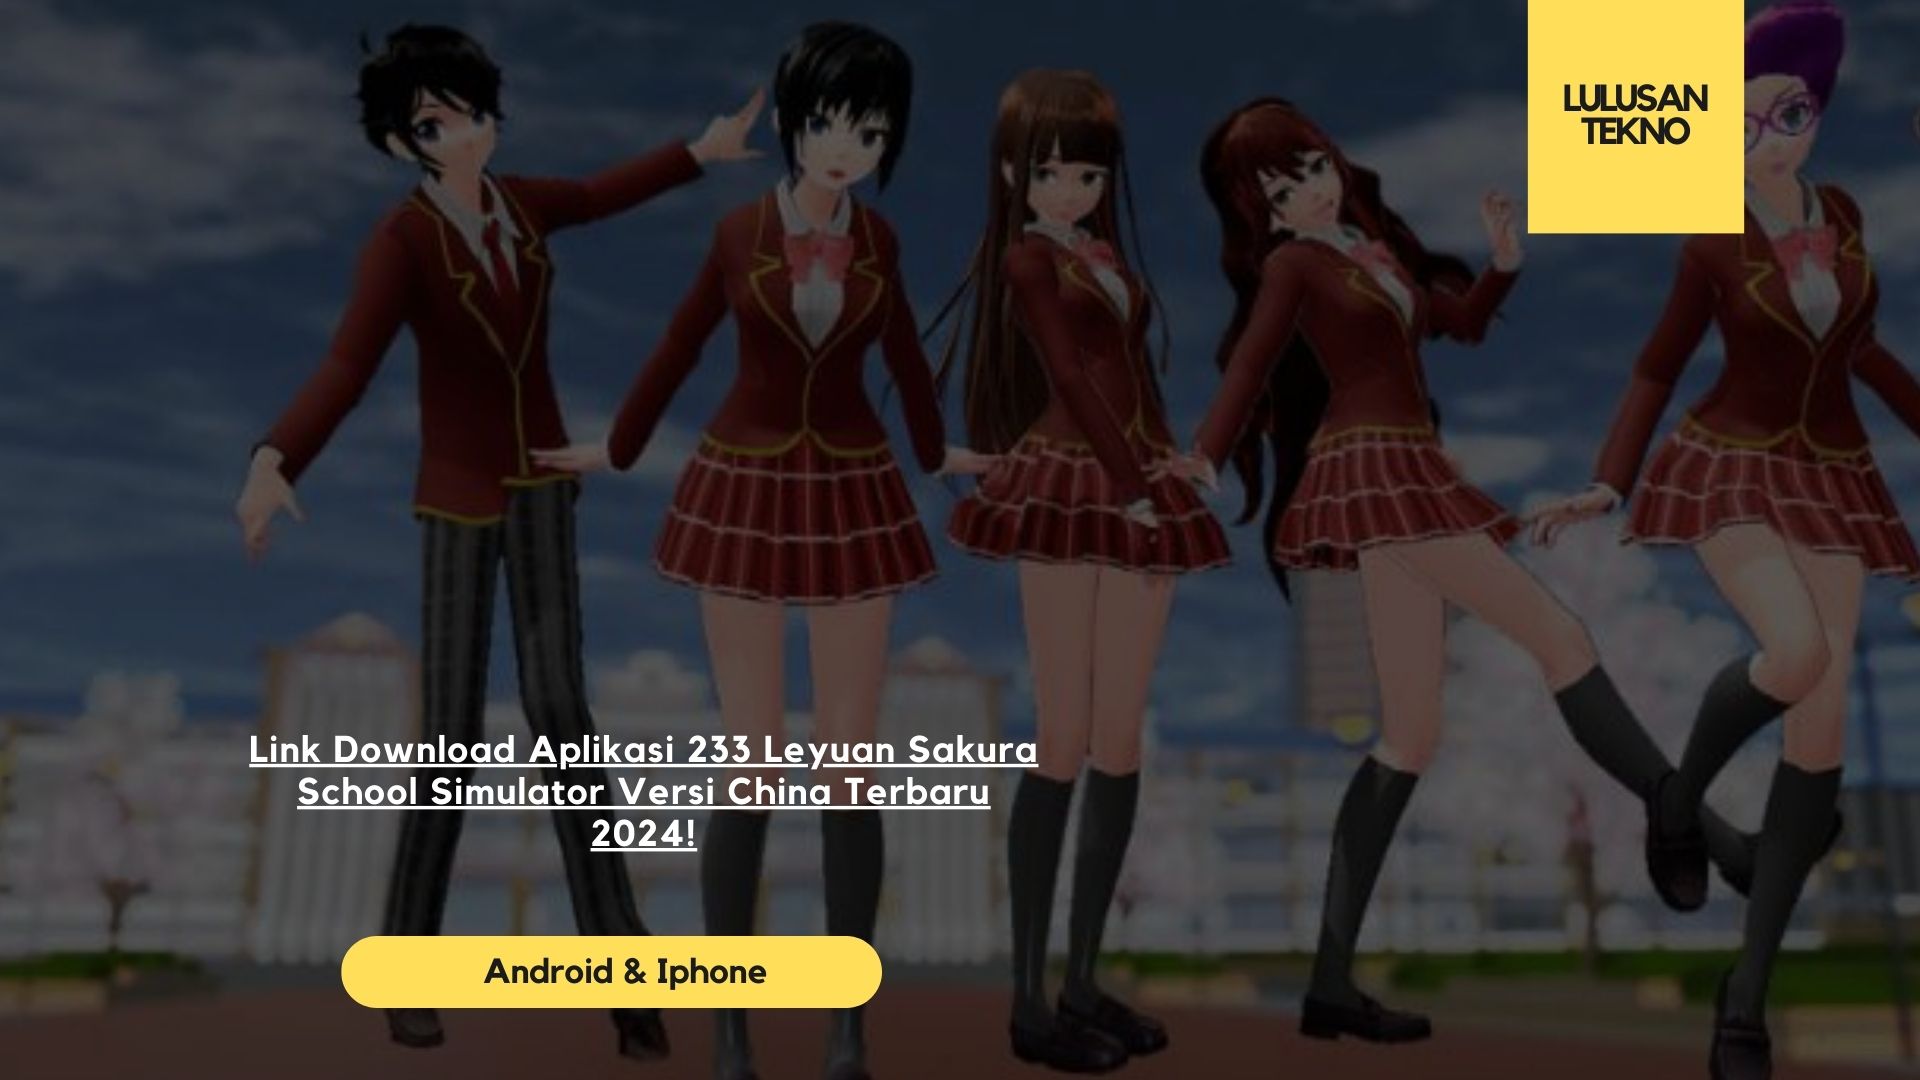 Link Download Aplikasi 233 Leyuan Sakura School Simulator Versi China Terbaru 2024!